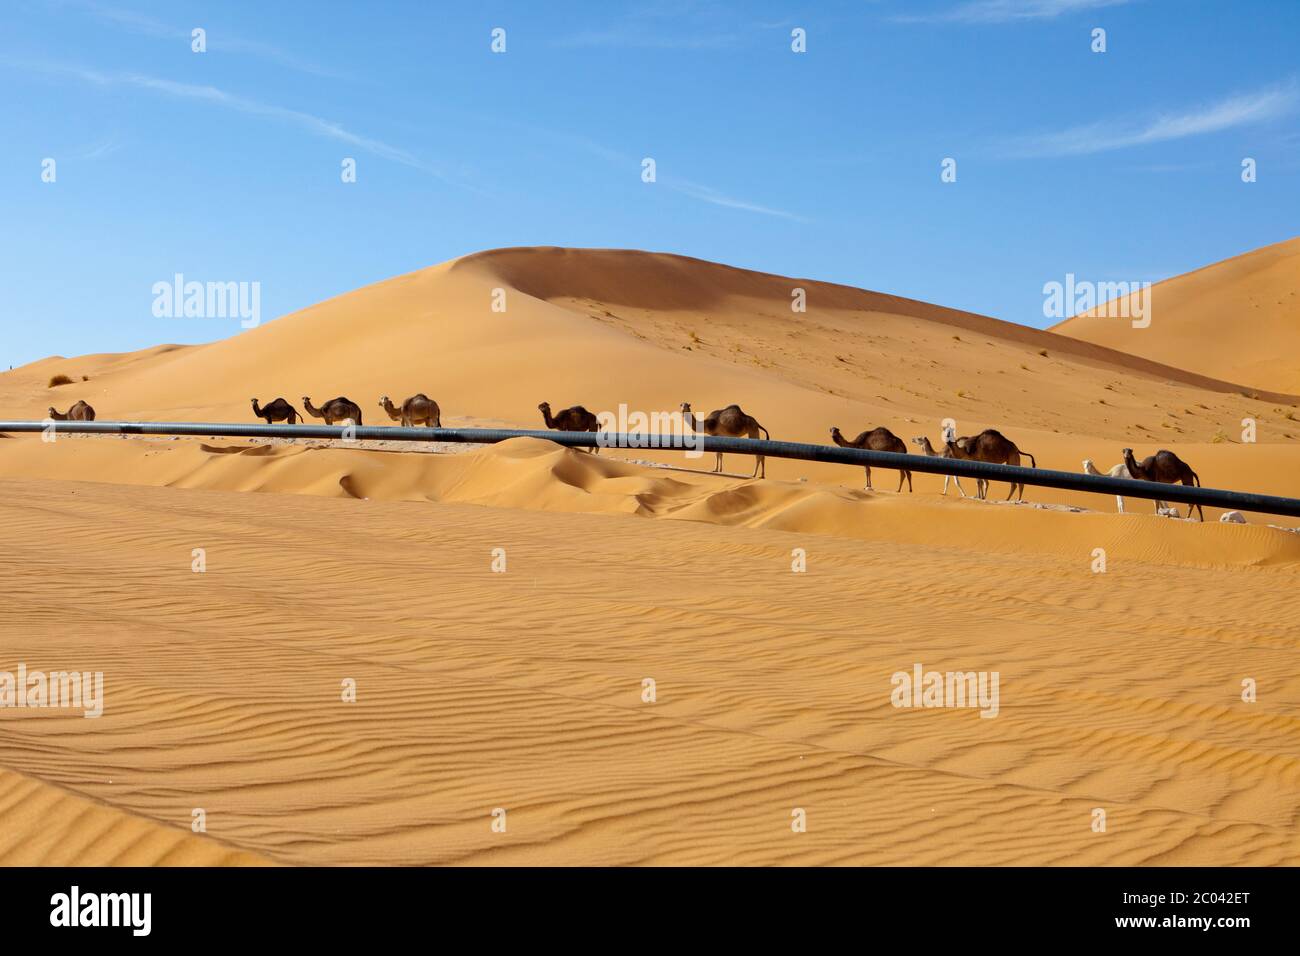 Camellos caminando en una pista construida por una compañía de exploración petrolera junto a un oleoducto de exportación del desierto del Sáhara, África del Norte. Foto de stock